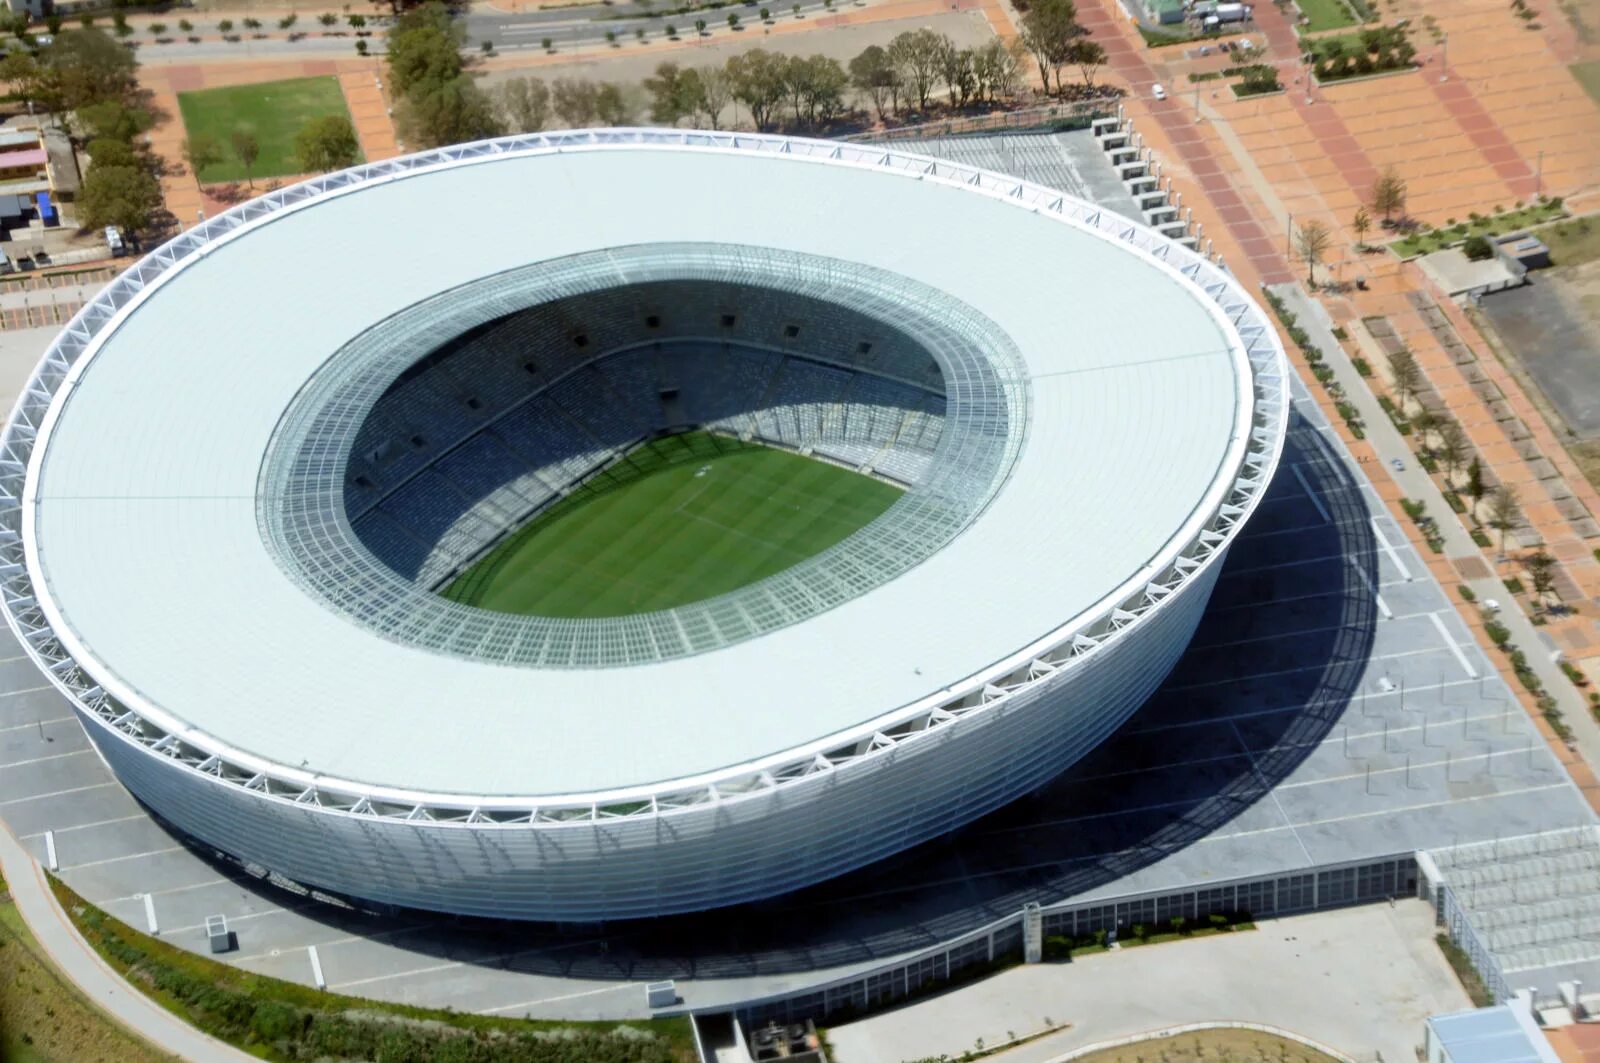 Стадионы каждый день. Кейптаун Южная Африка стадион. Кейптаун футбольный стадион. Стадион Грин Пойнт, Южная Африка. Стадион Кейптаун (Грин Пойнт), Южная Африка.